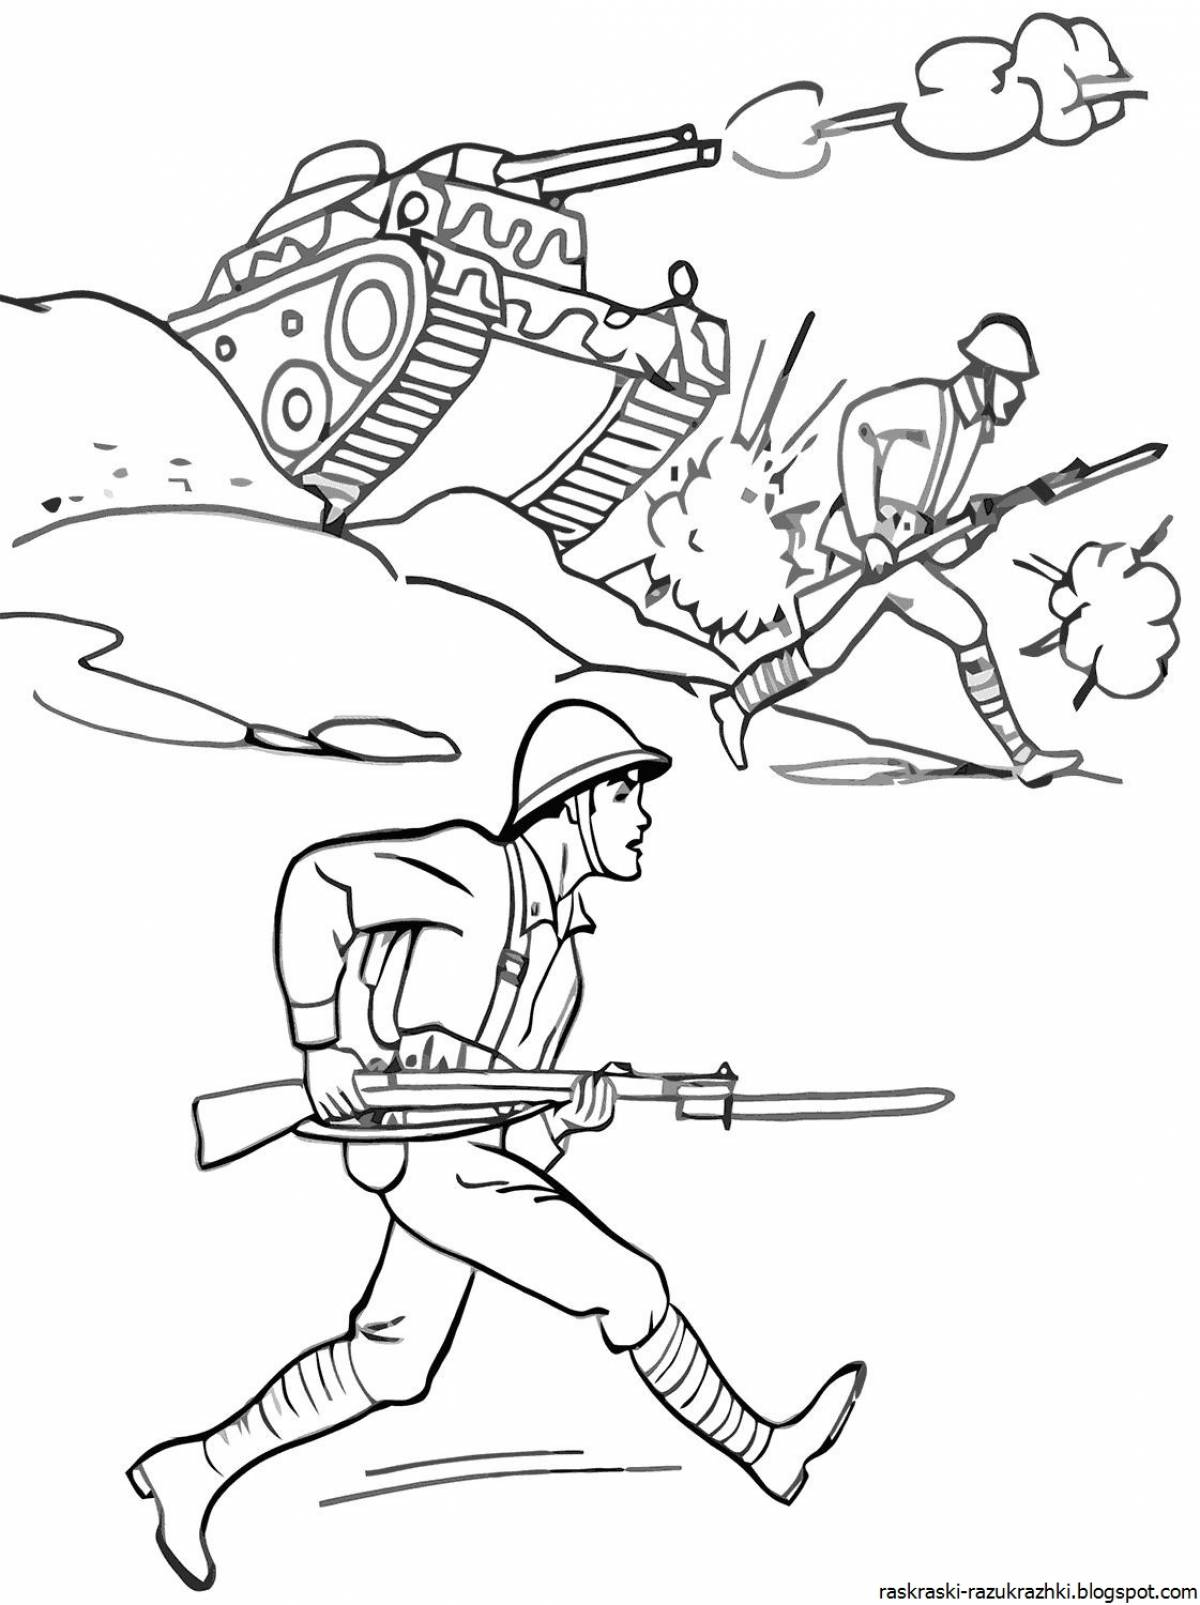 Great war coloring book for preschoolers